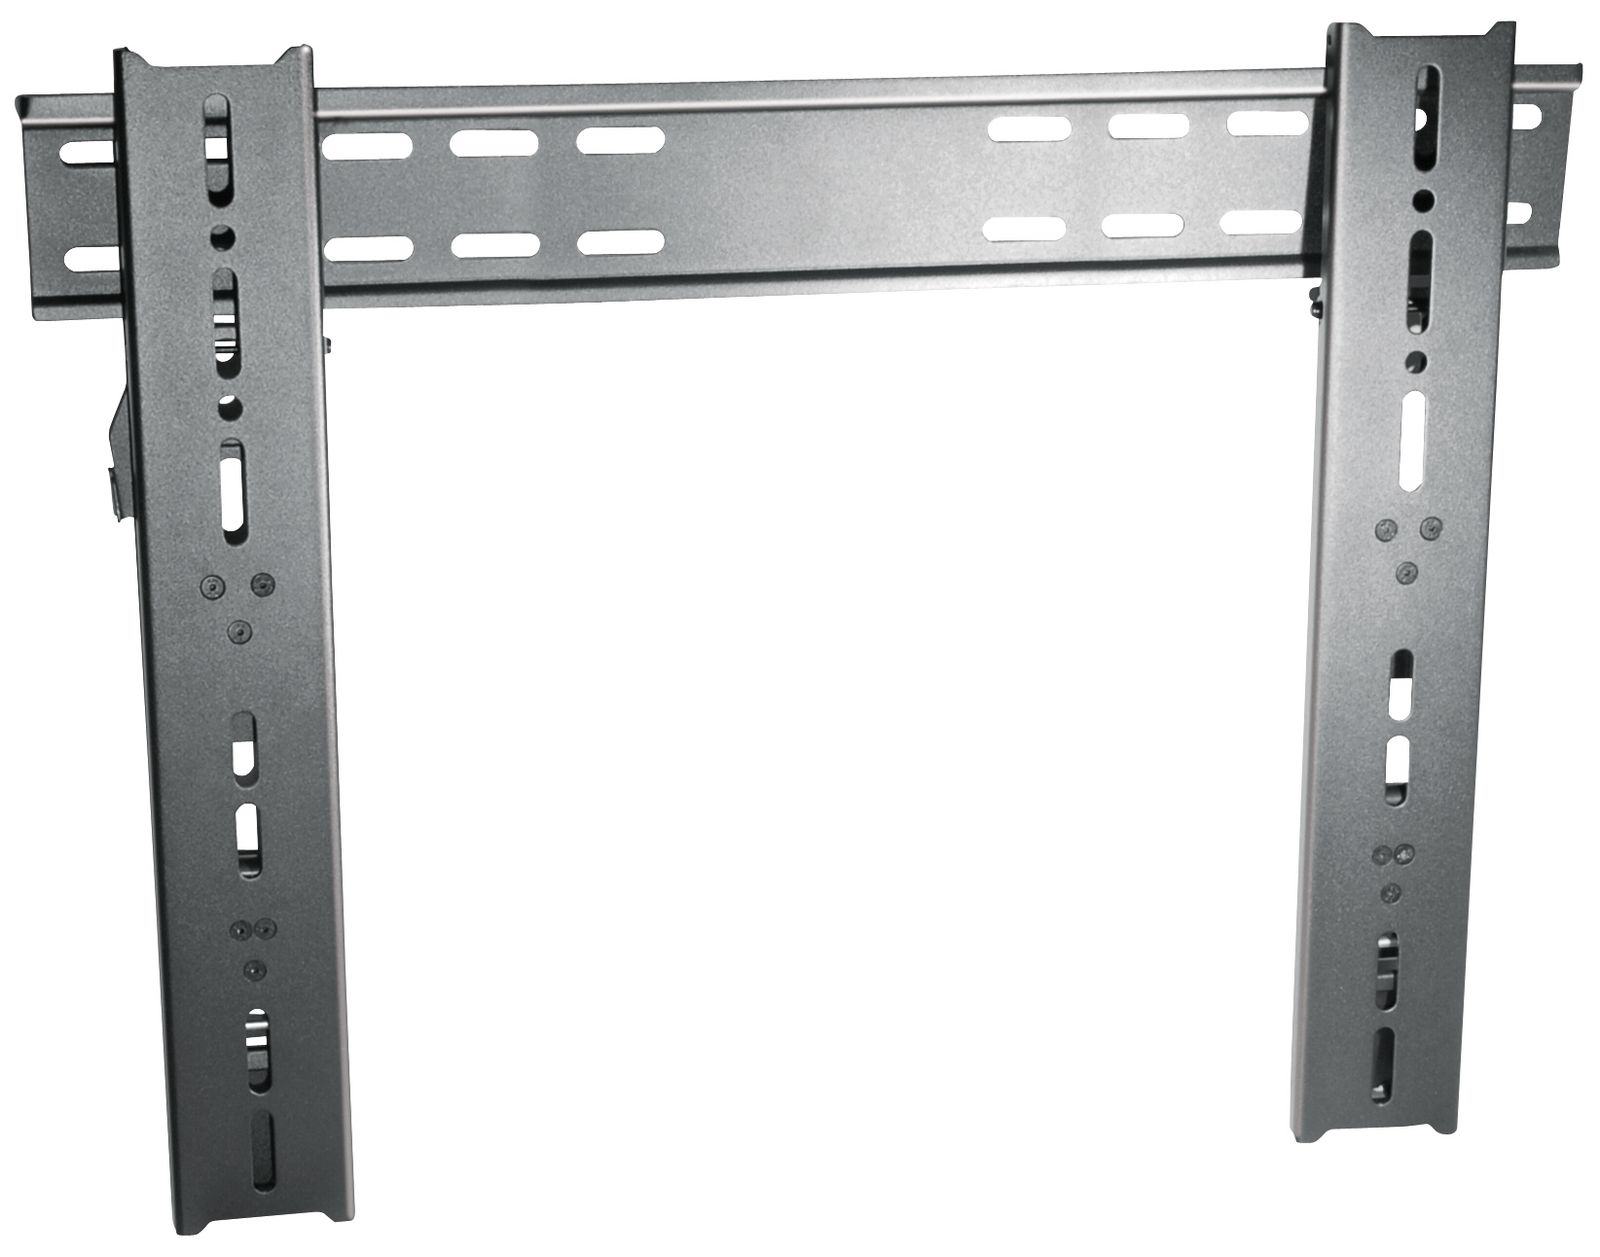 Wandhalter für Flachbildschirm MyWall HP15-2 für Bildschirme 32" - 60" (81-152cm)trägt bis zu 45kg schwarz